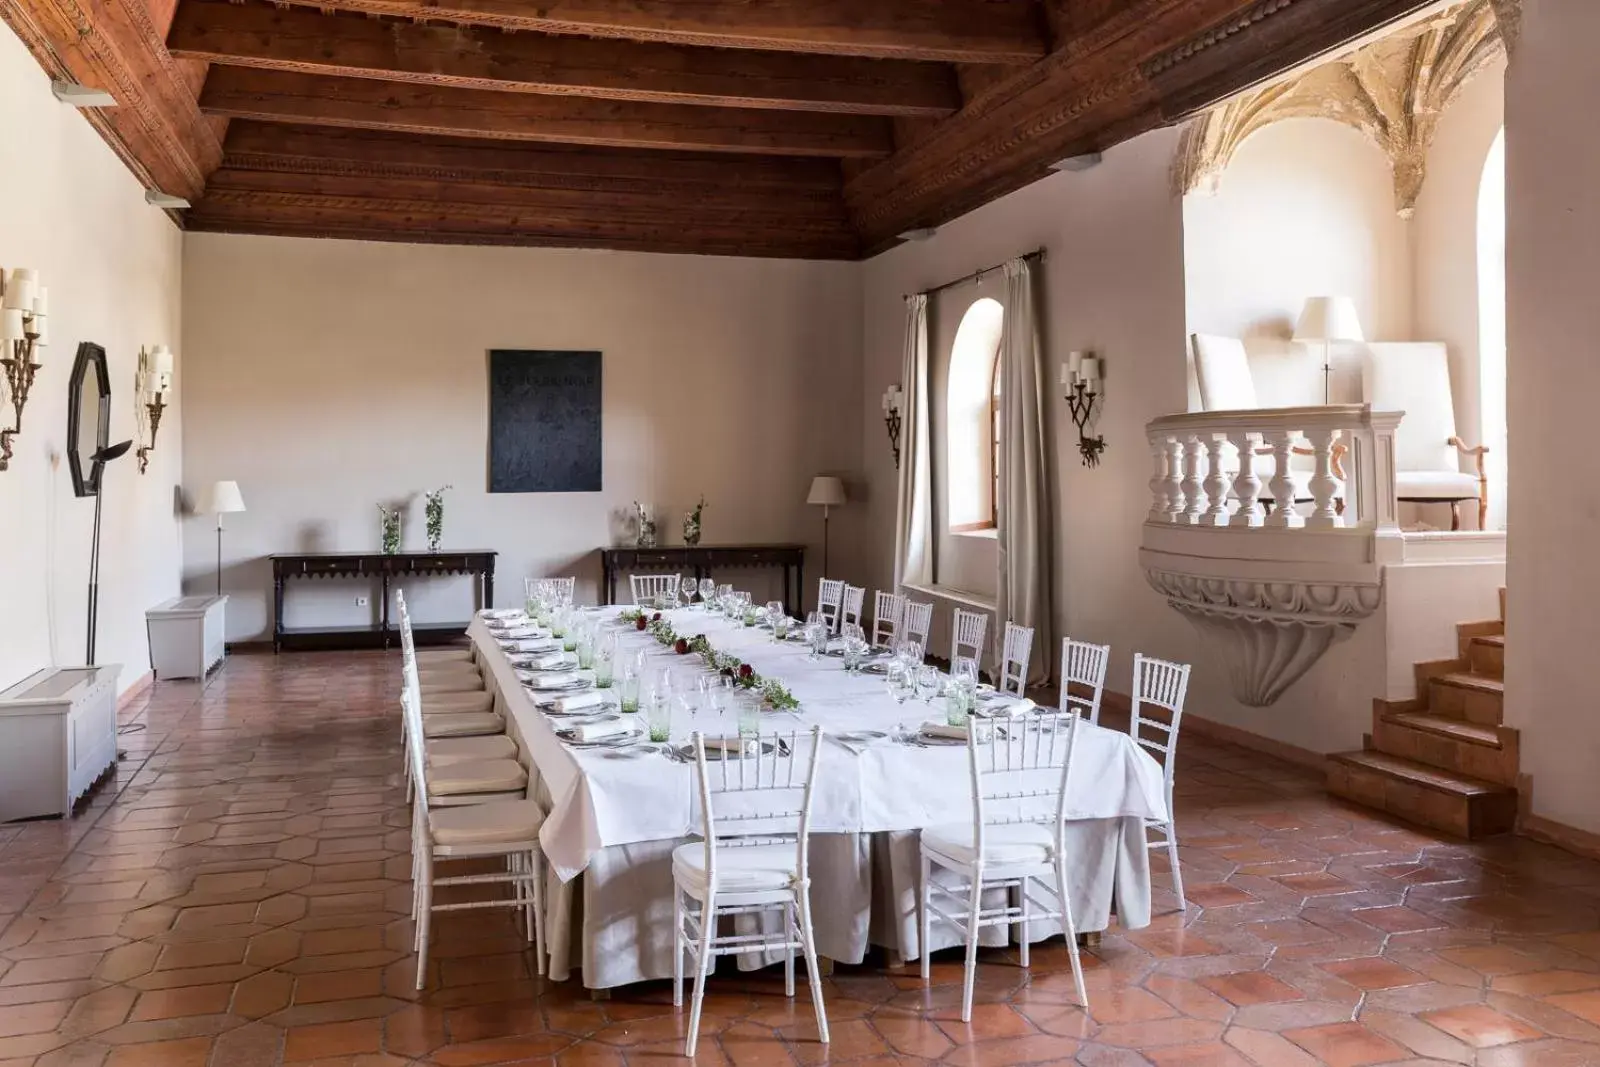 Banquet/Function facilities in Parador de Cuenca